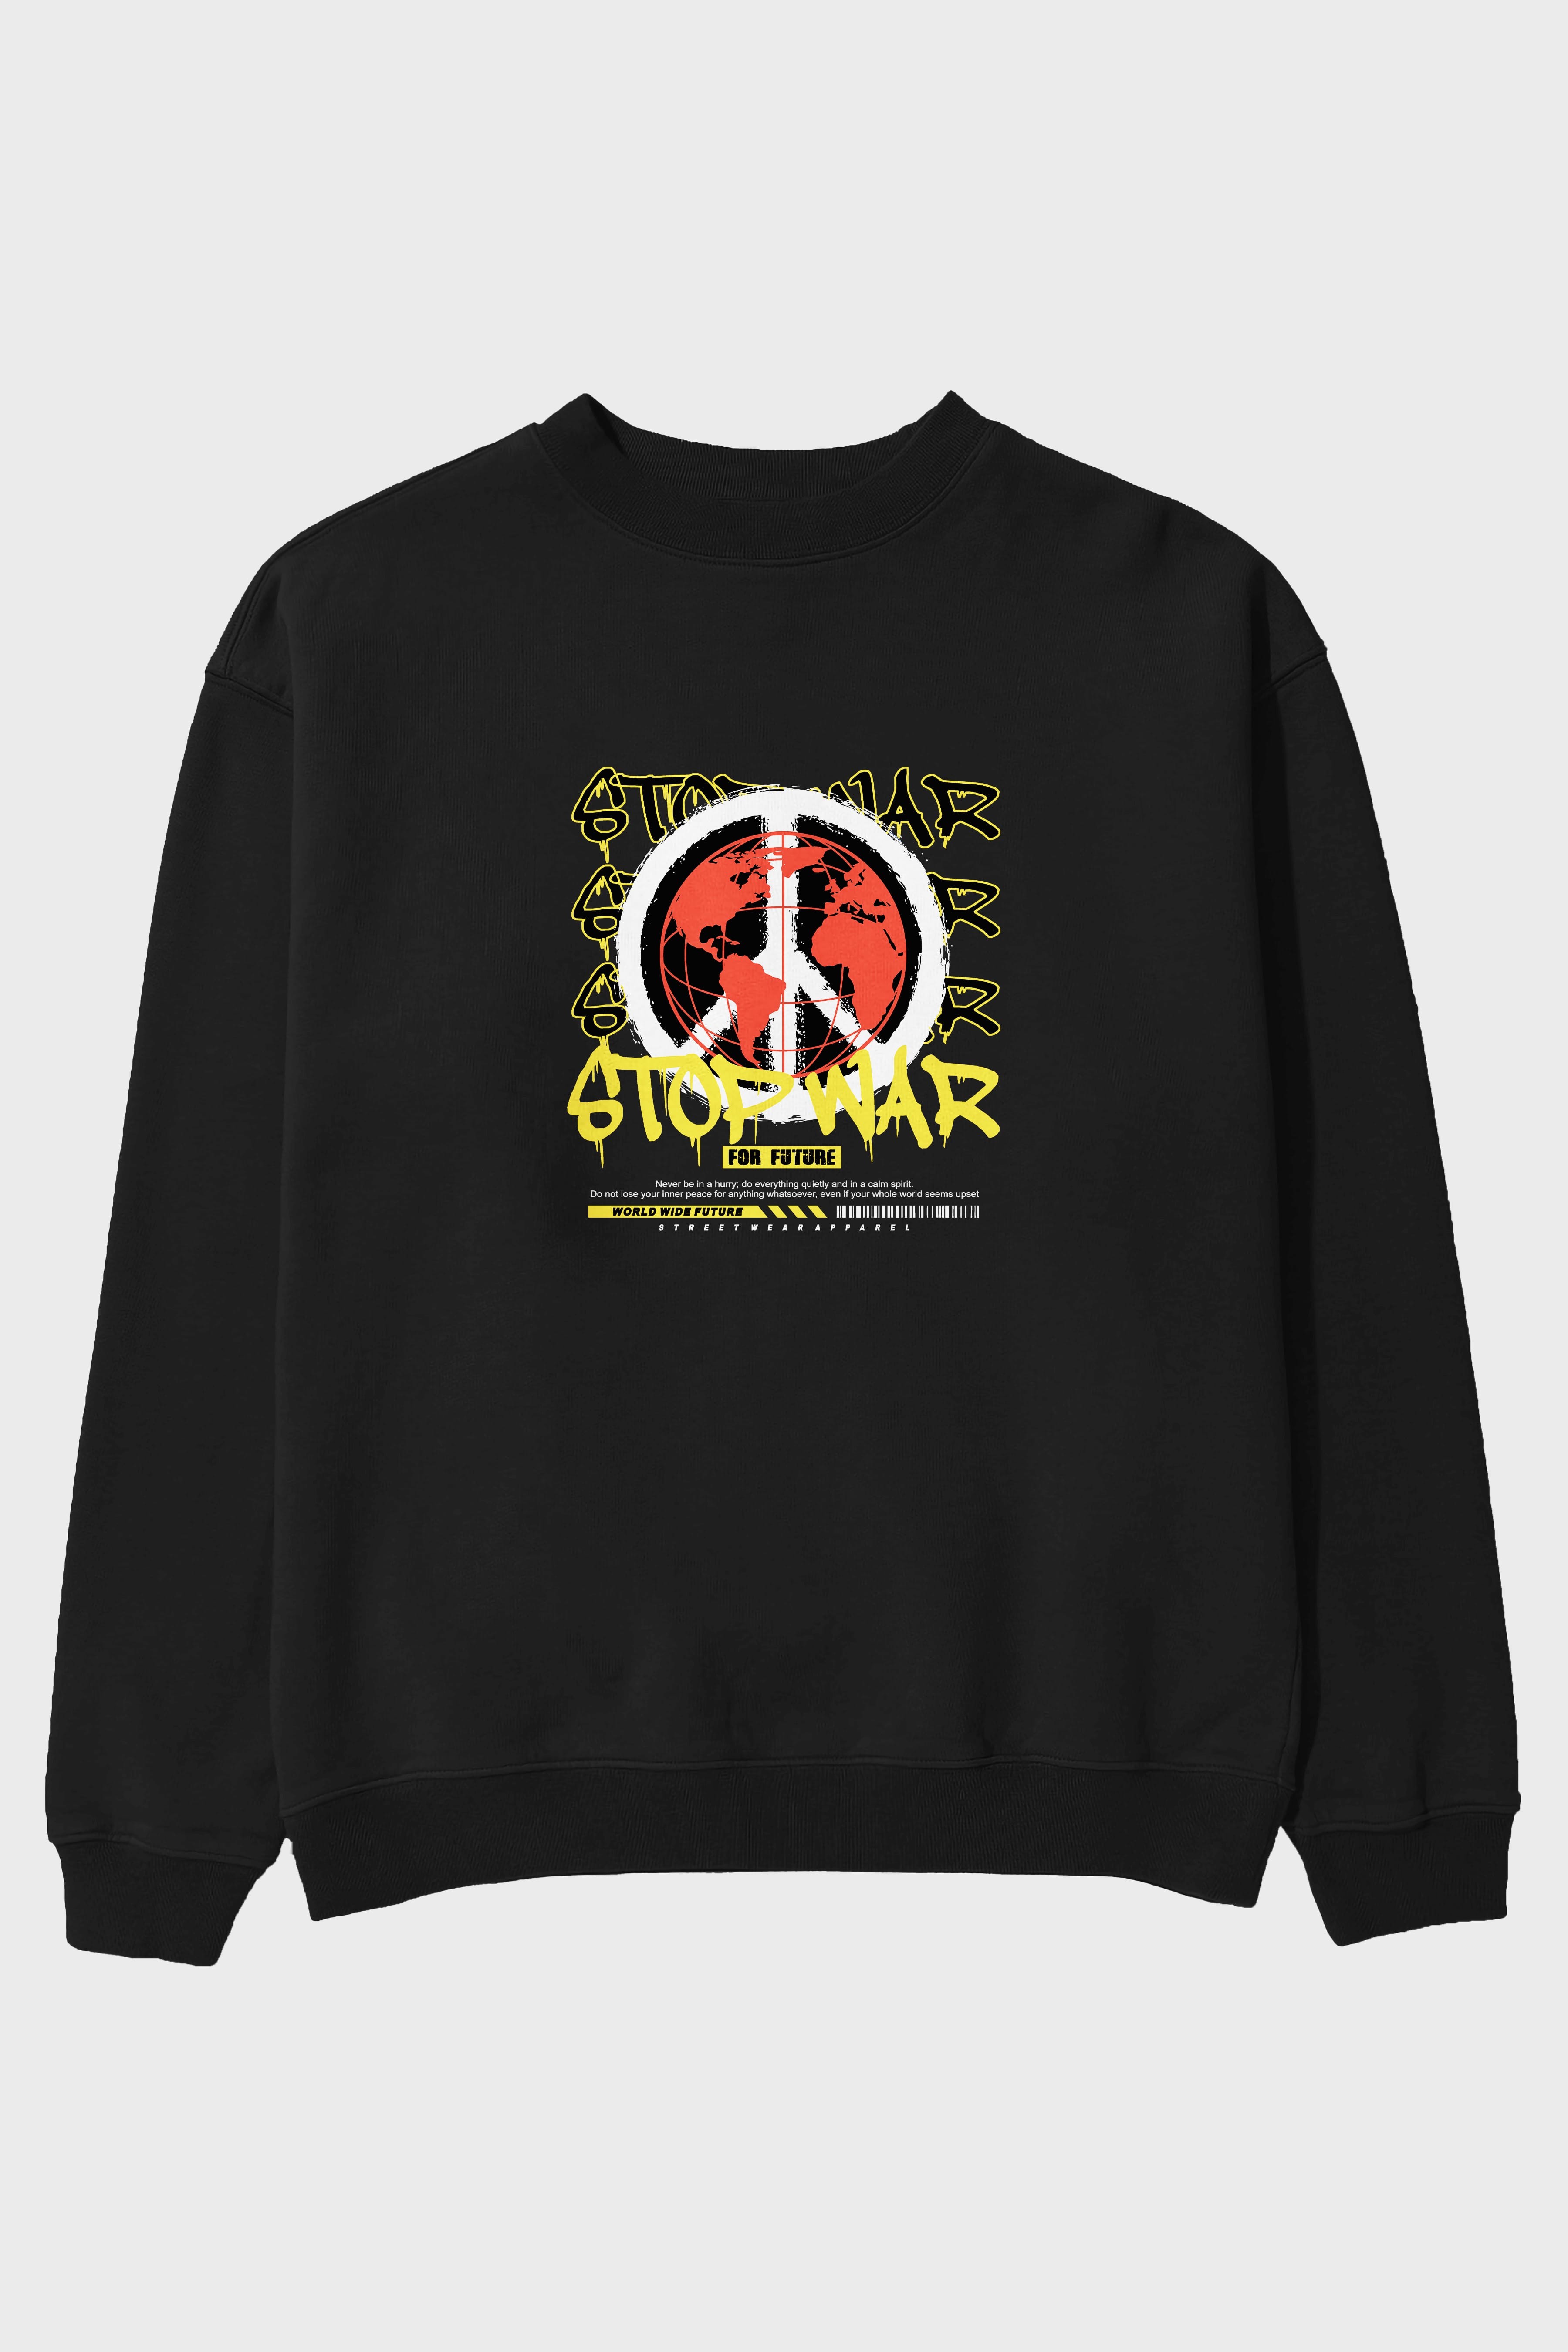 Stop War for Future Ön Baskılı Oversize Sweatshirt Erkek Kadın Unisex